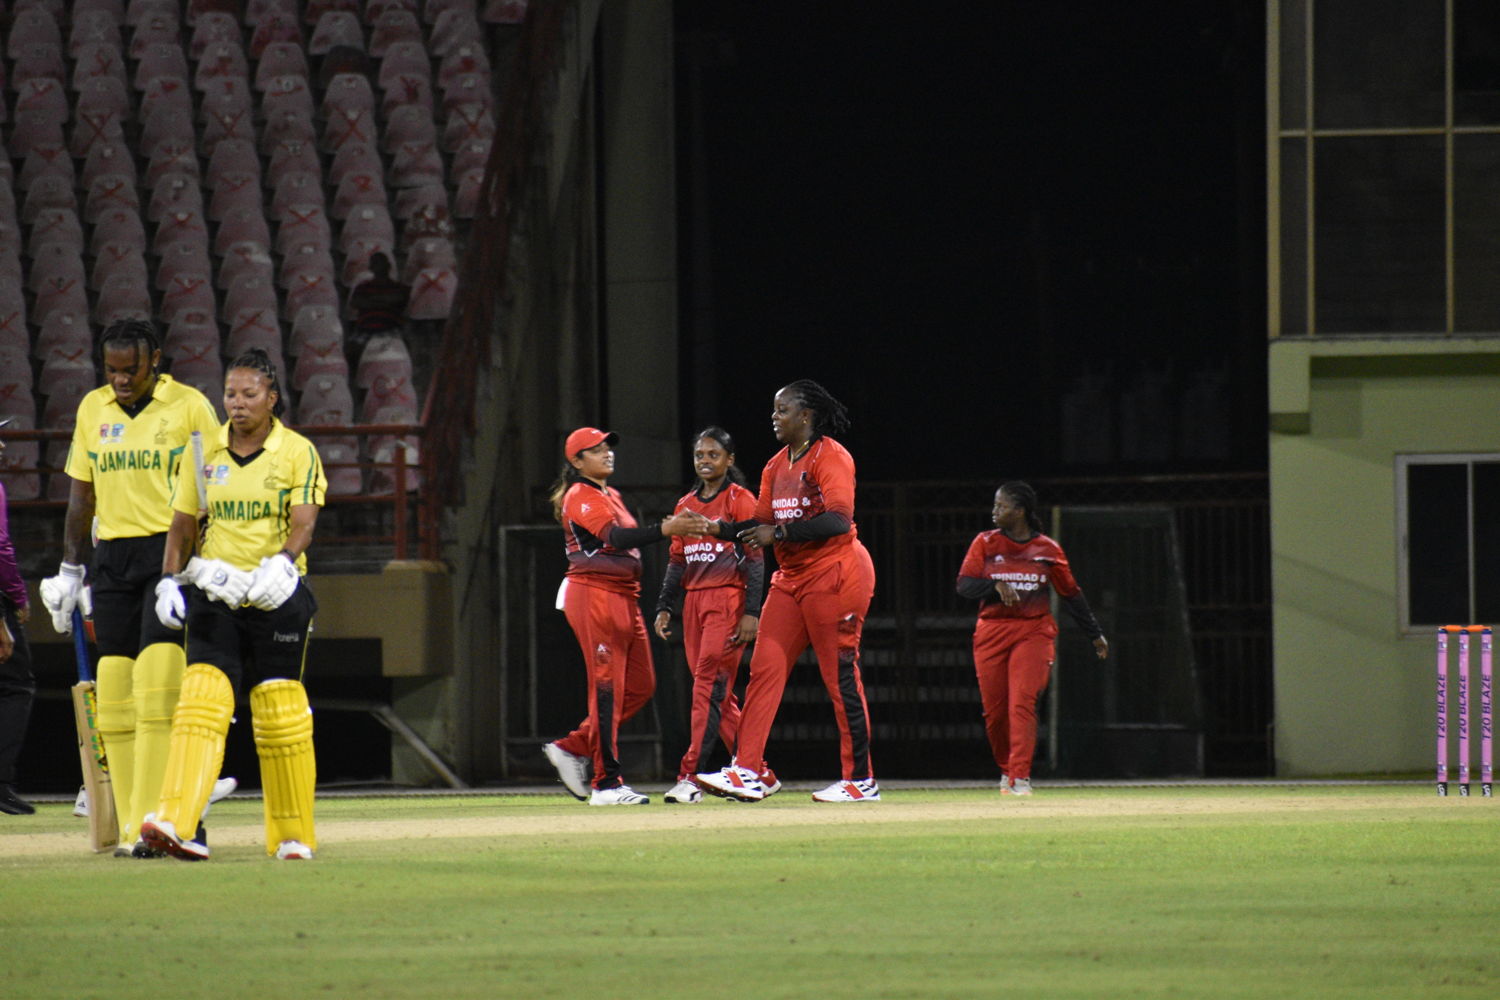 Trinidad & Tobago celebrate a Jamaica wicket